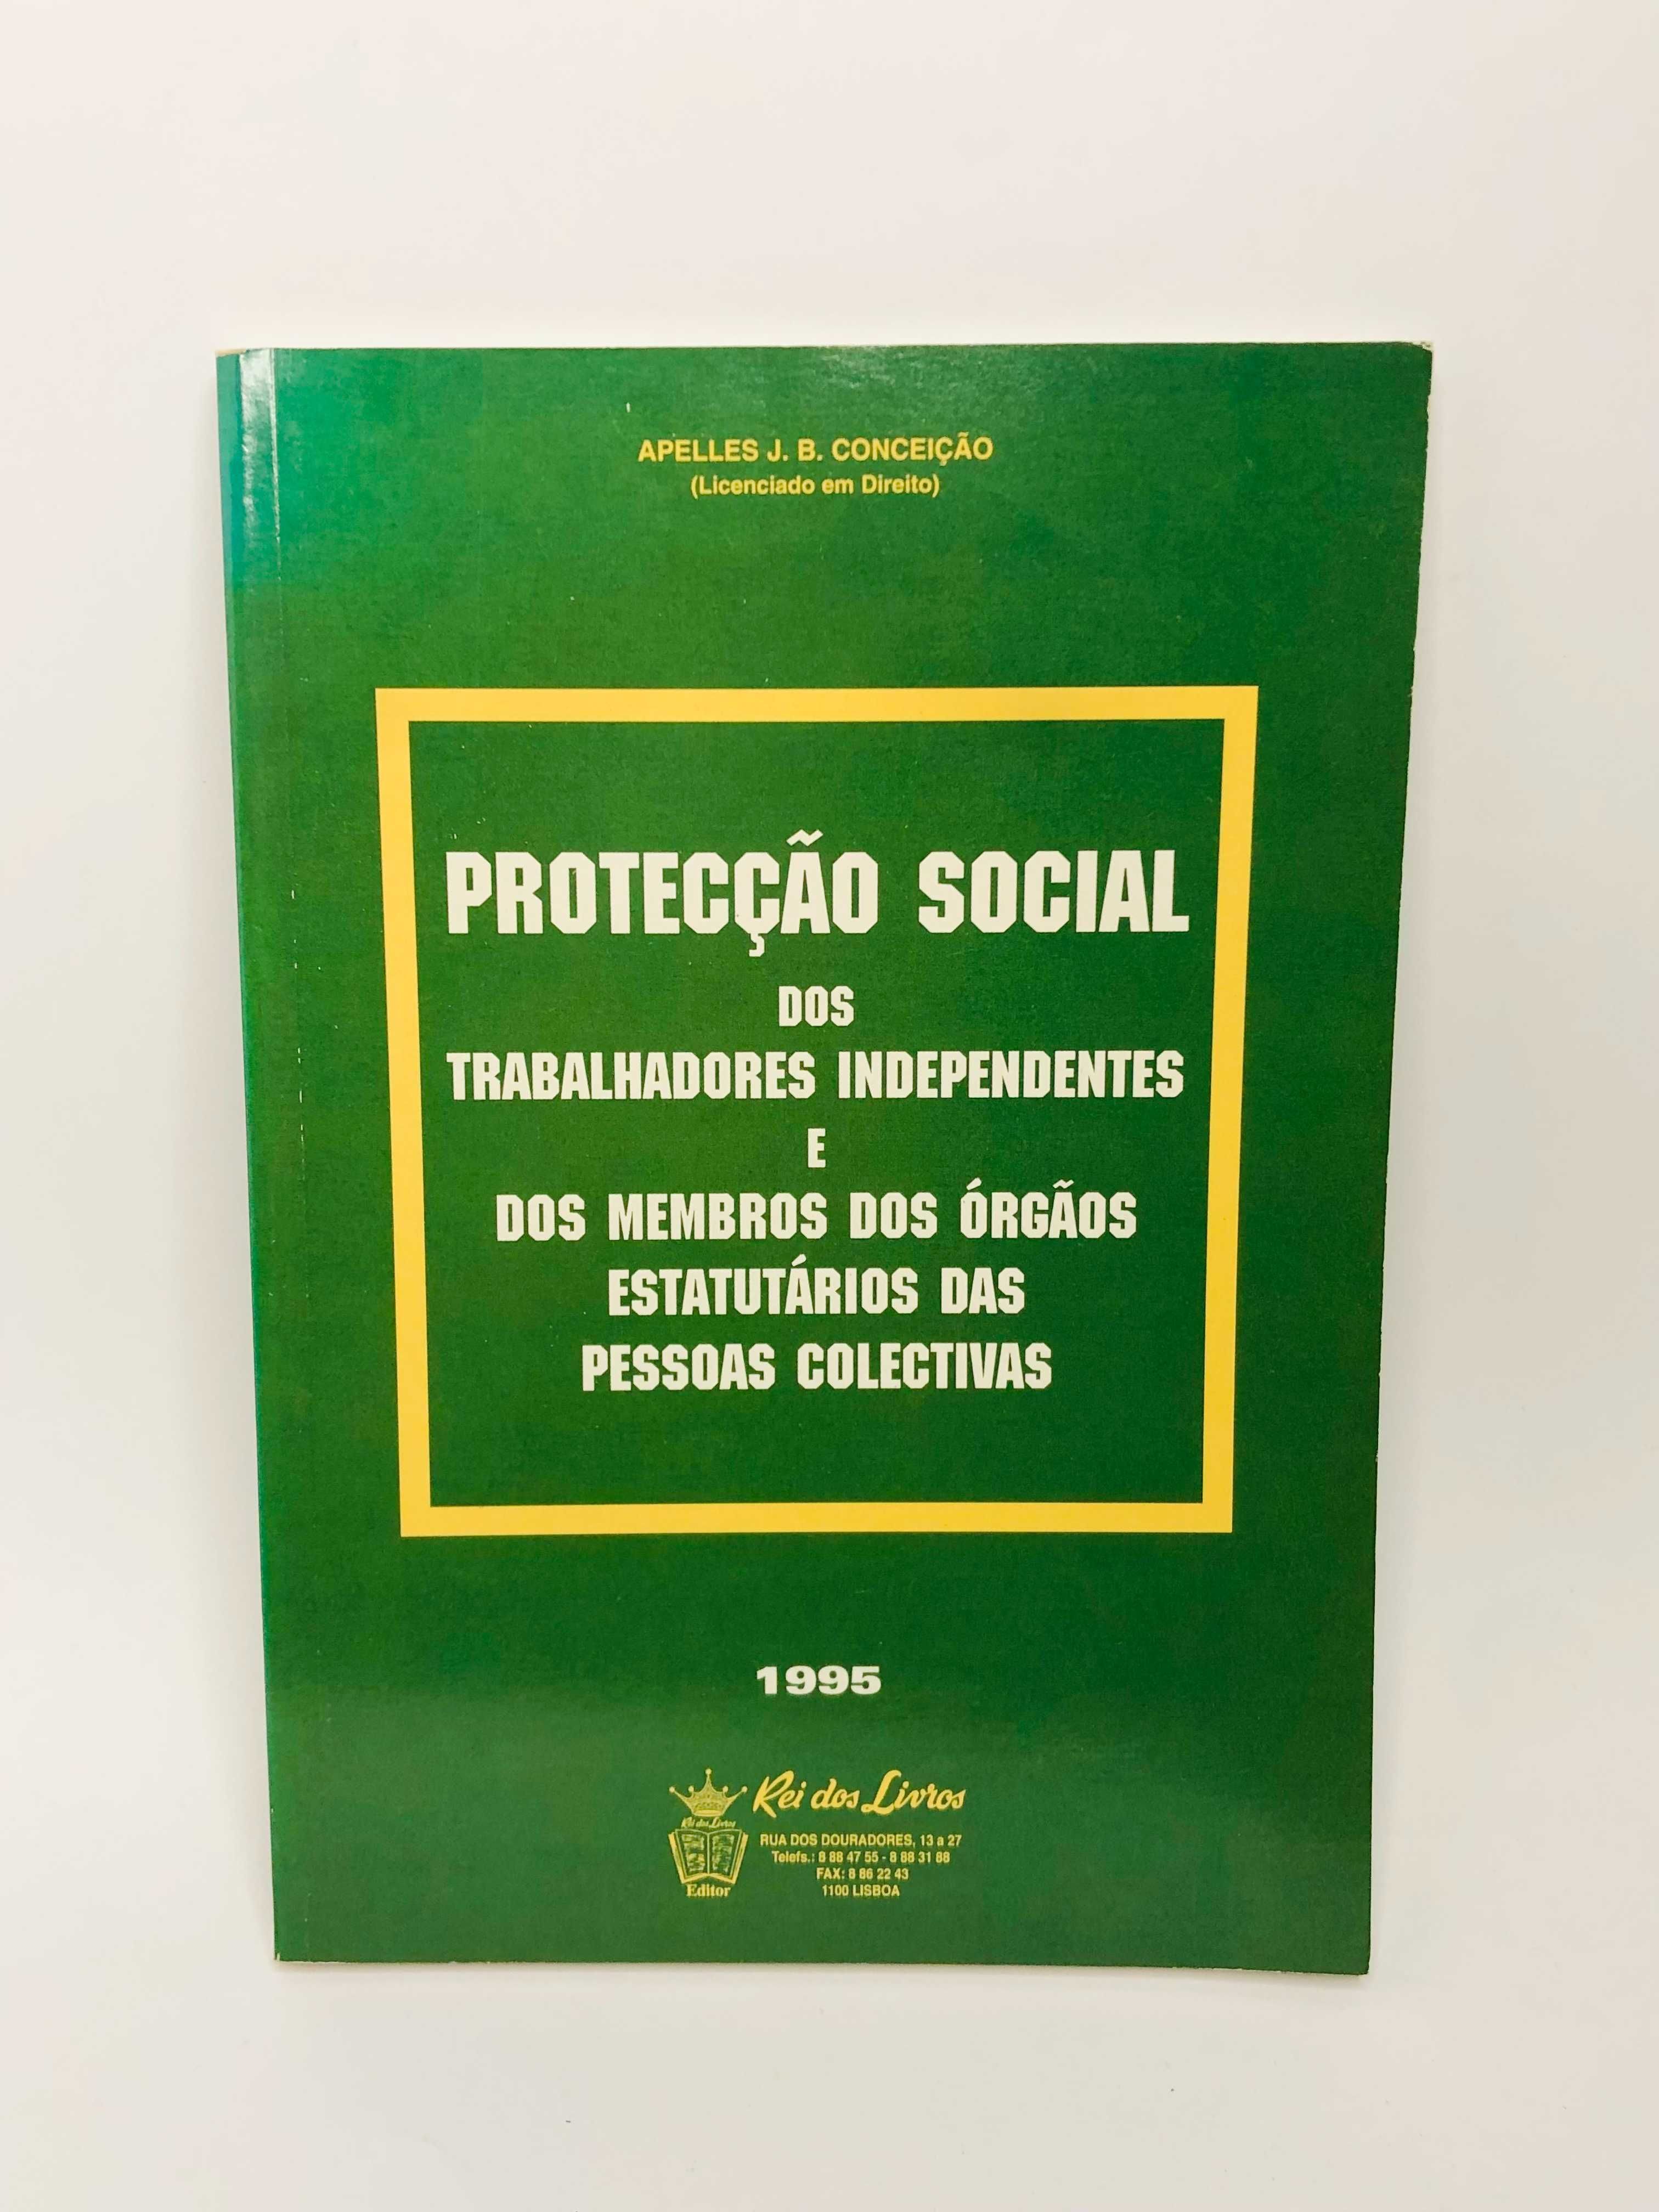 Protecção Social dos Trabalhadores Independentes e Membros dos Órgãos